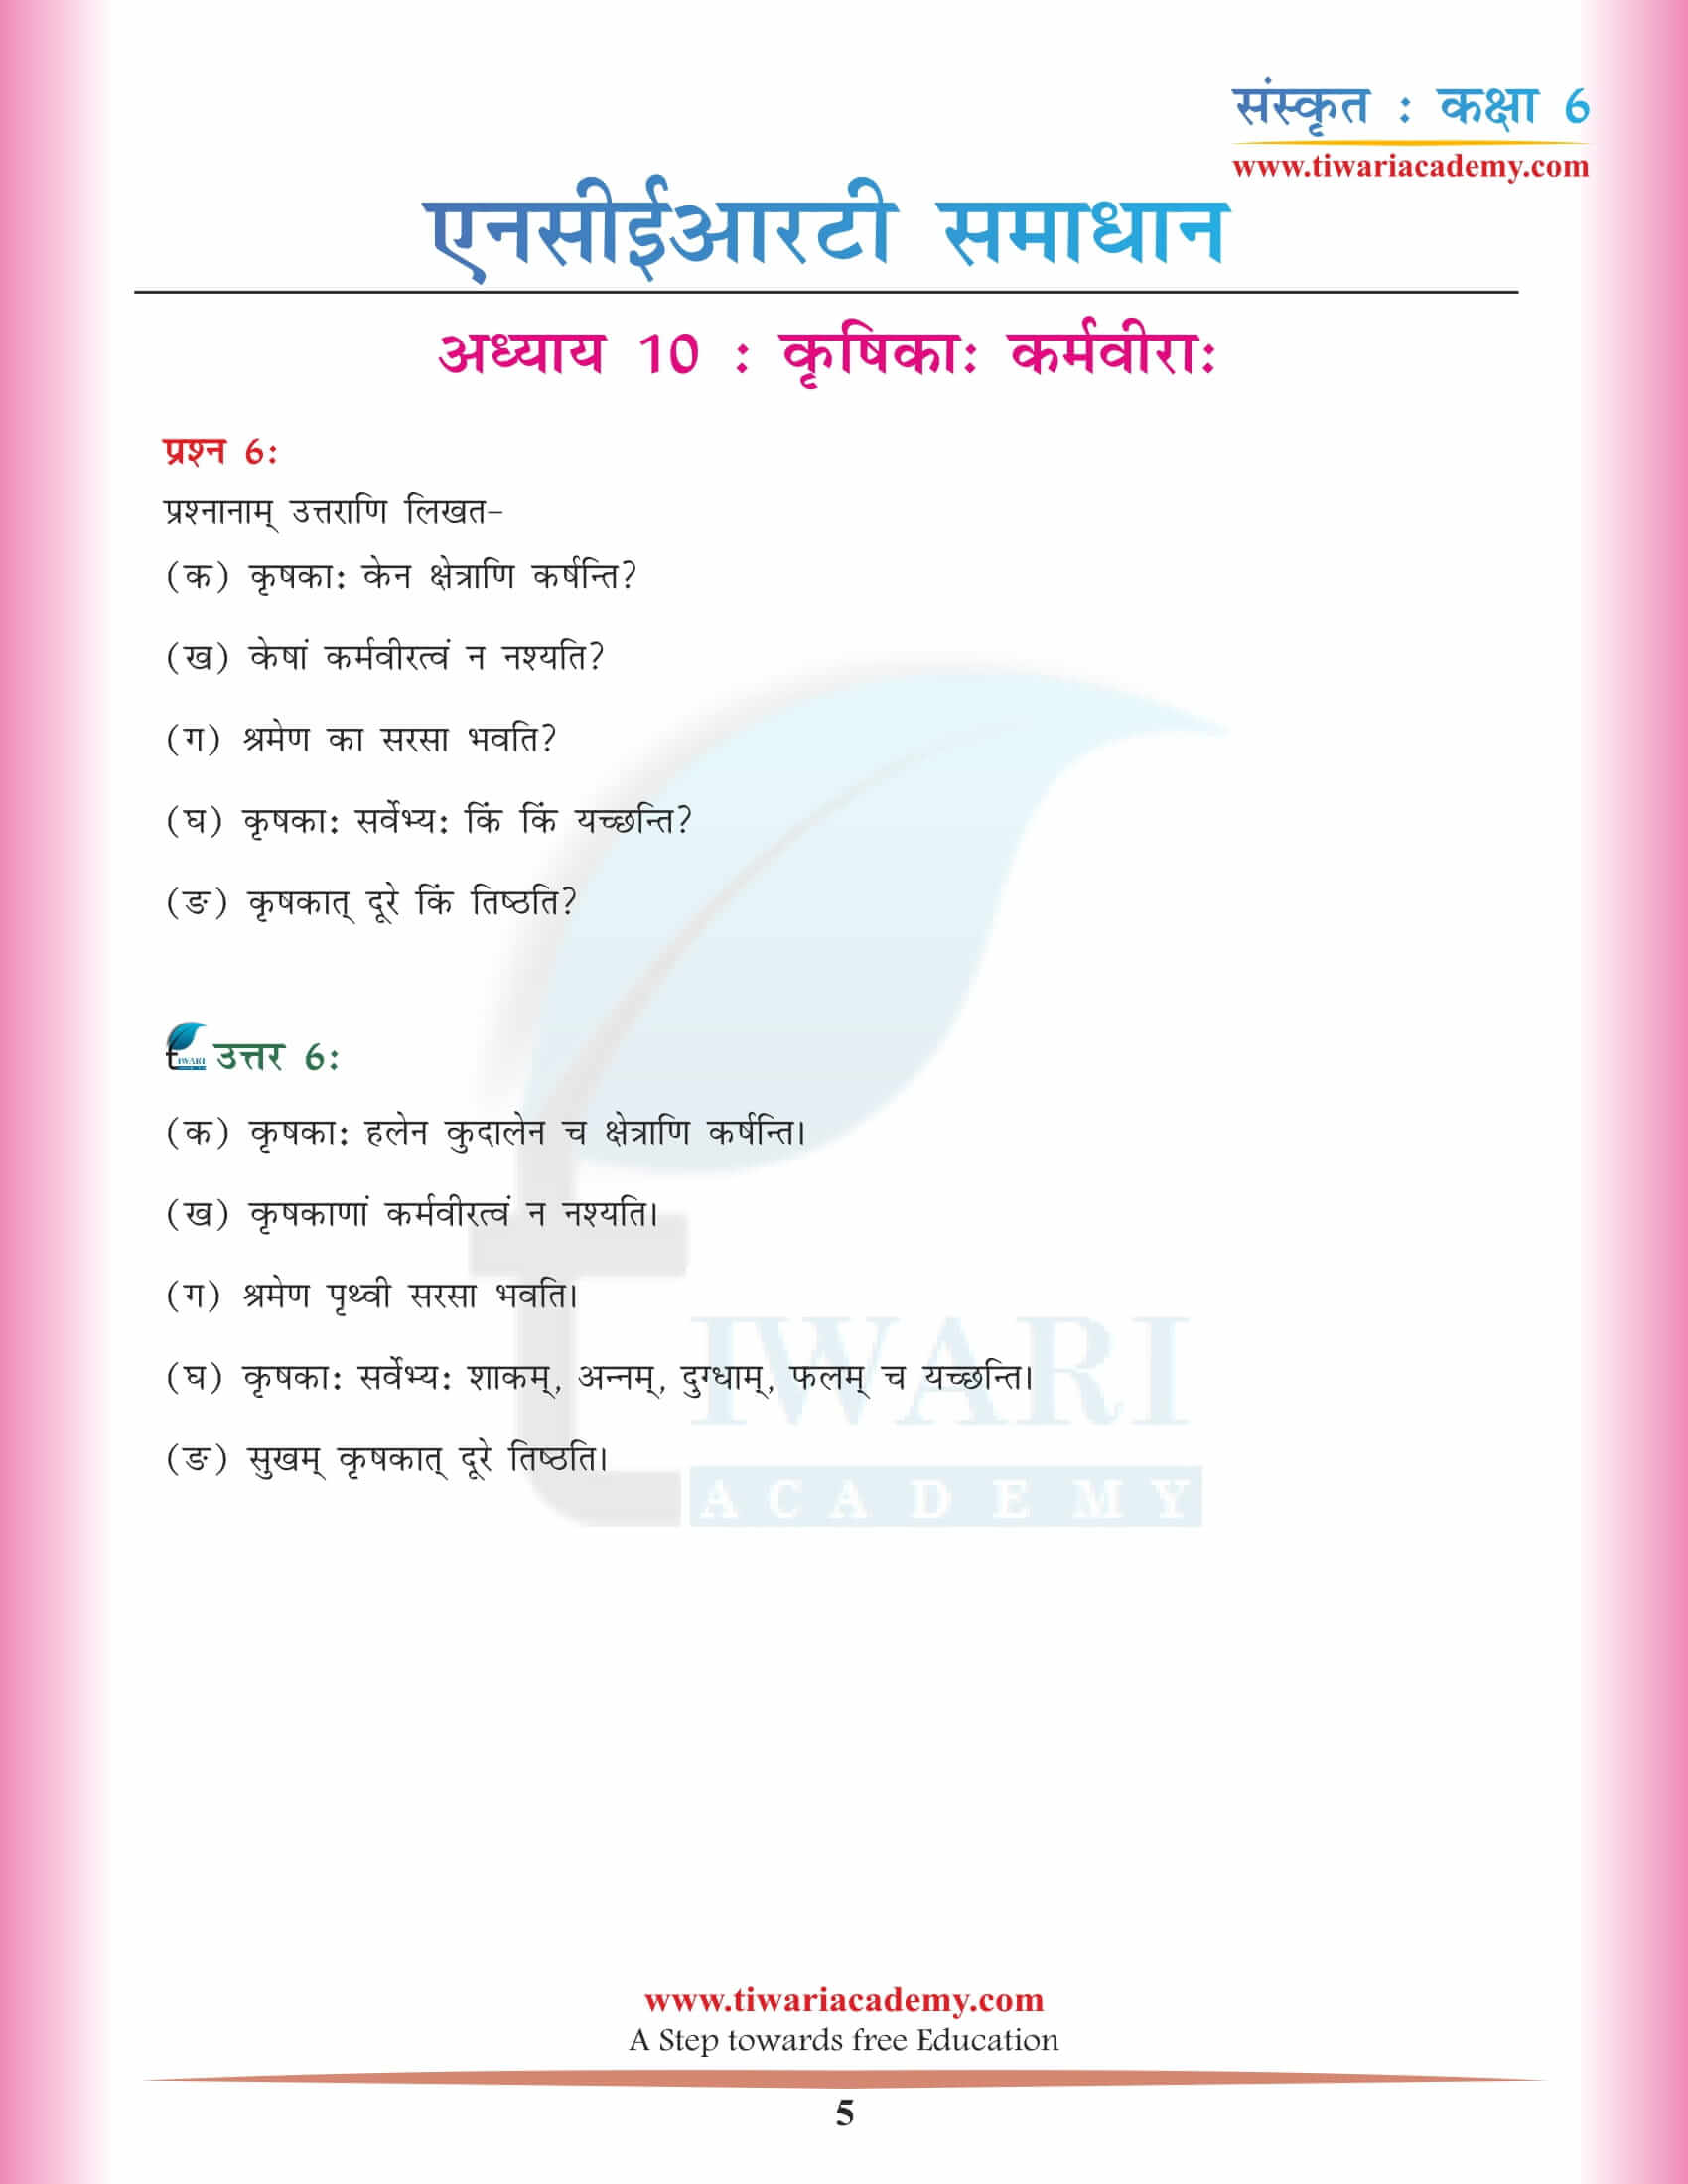 एनसीईआरटी समाधान कक्षा 6 संस्कृत अध्याय 10 प्रश्न उत्तर